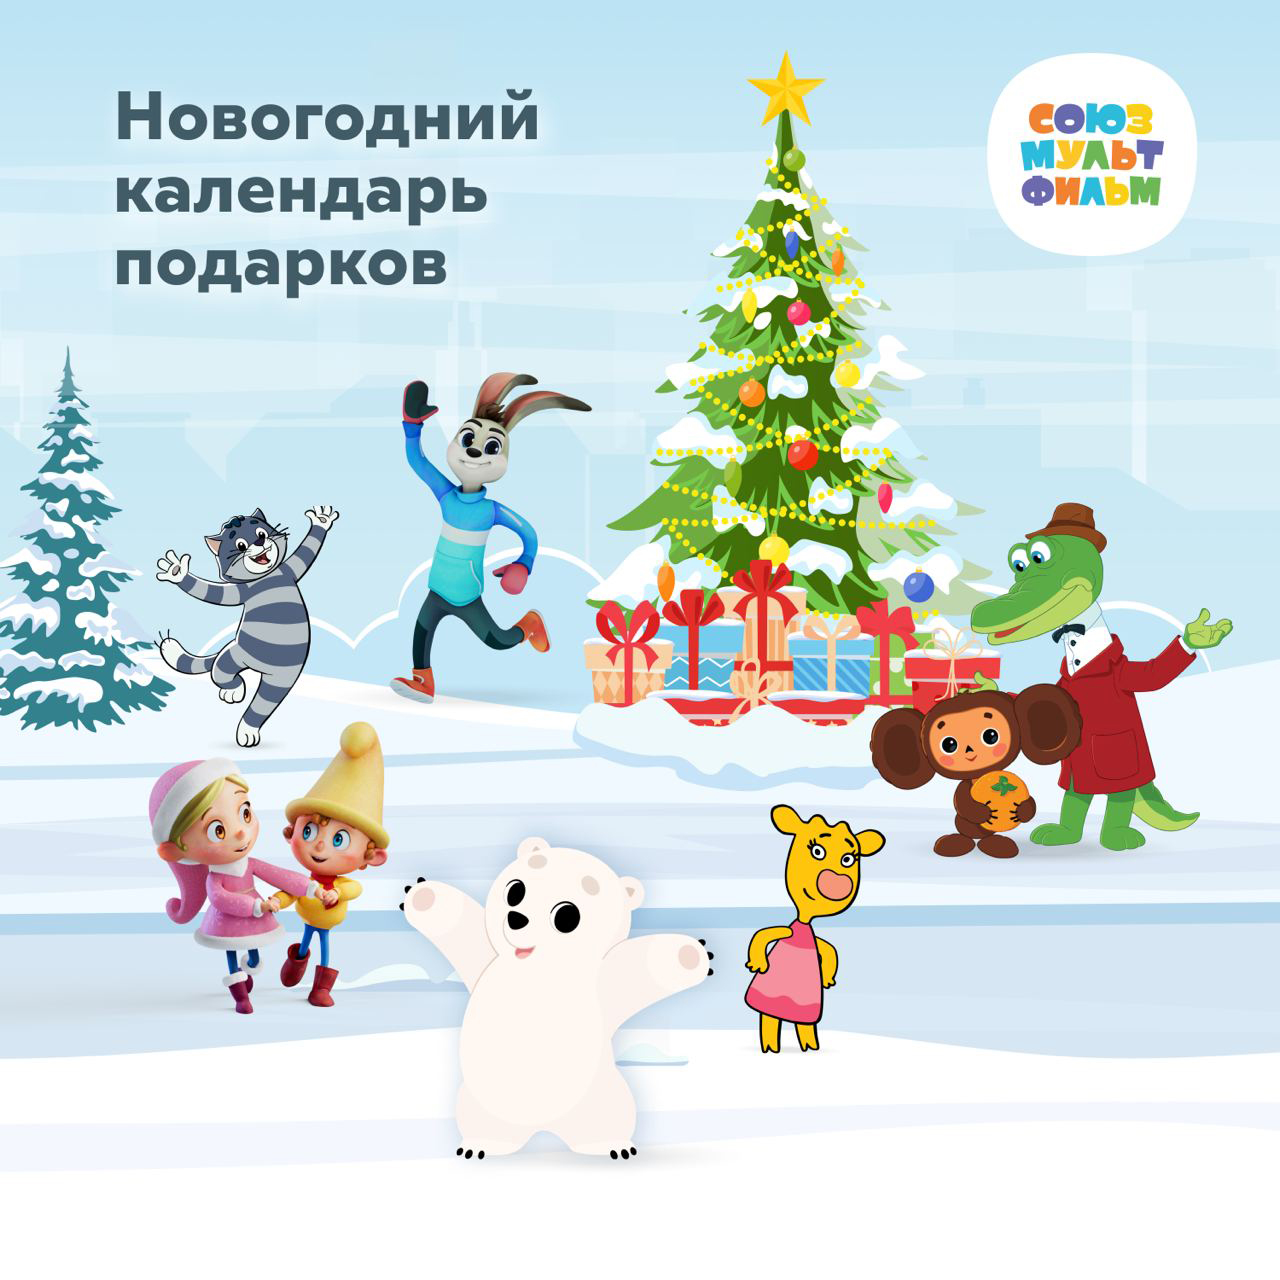 Союзмультфильм запустил цифровой адвент-календарь с подарками на каждый день  декабря и новогодних каникул | Новости компаний | Advertology.Ru